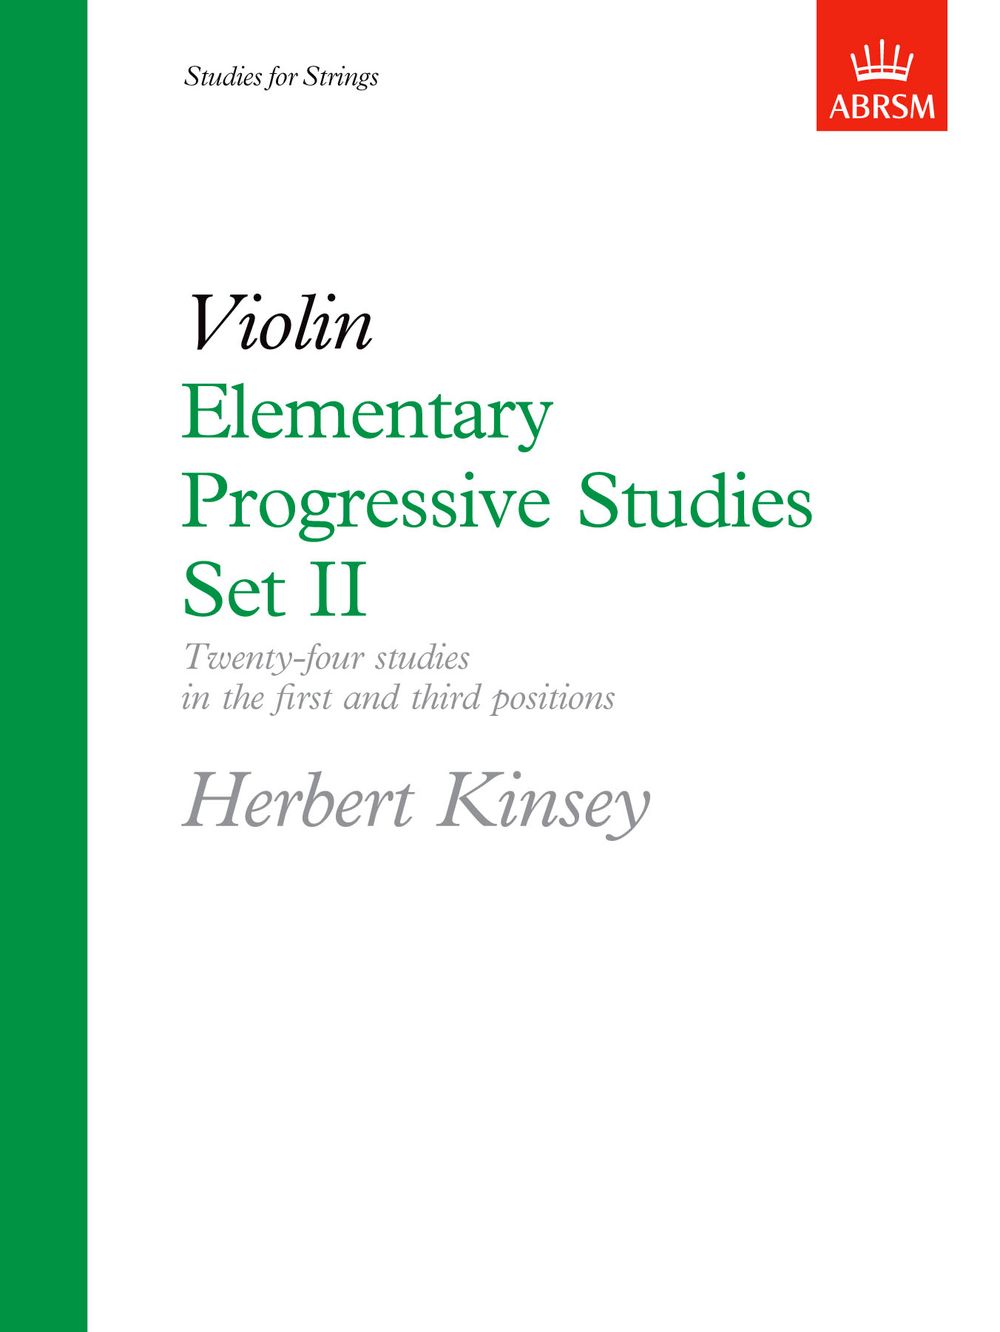 Herbert Kinsey: Elementary Progressive Studies  Set II: Violin: Study